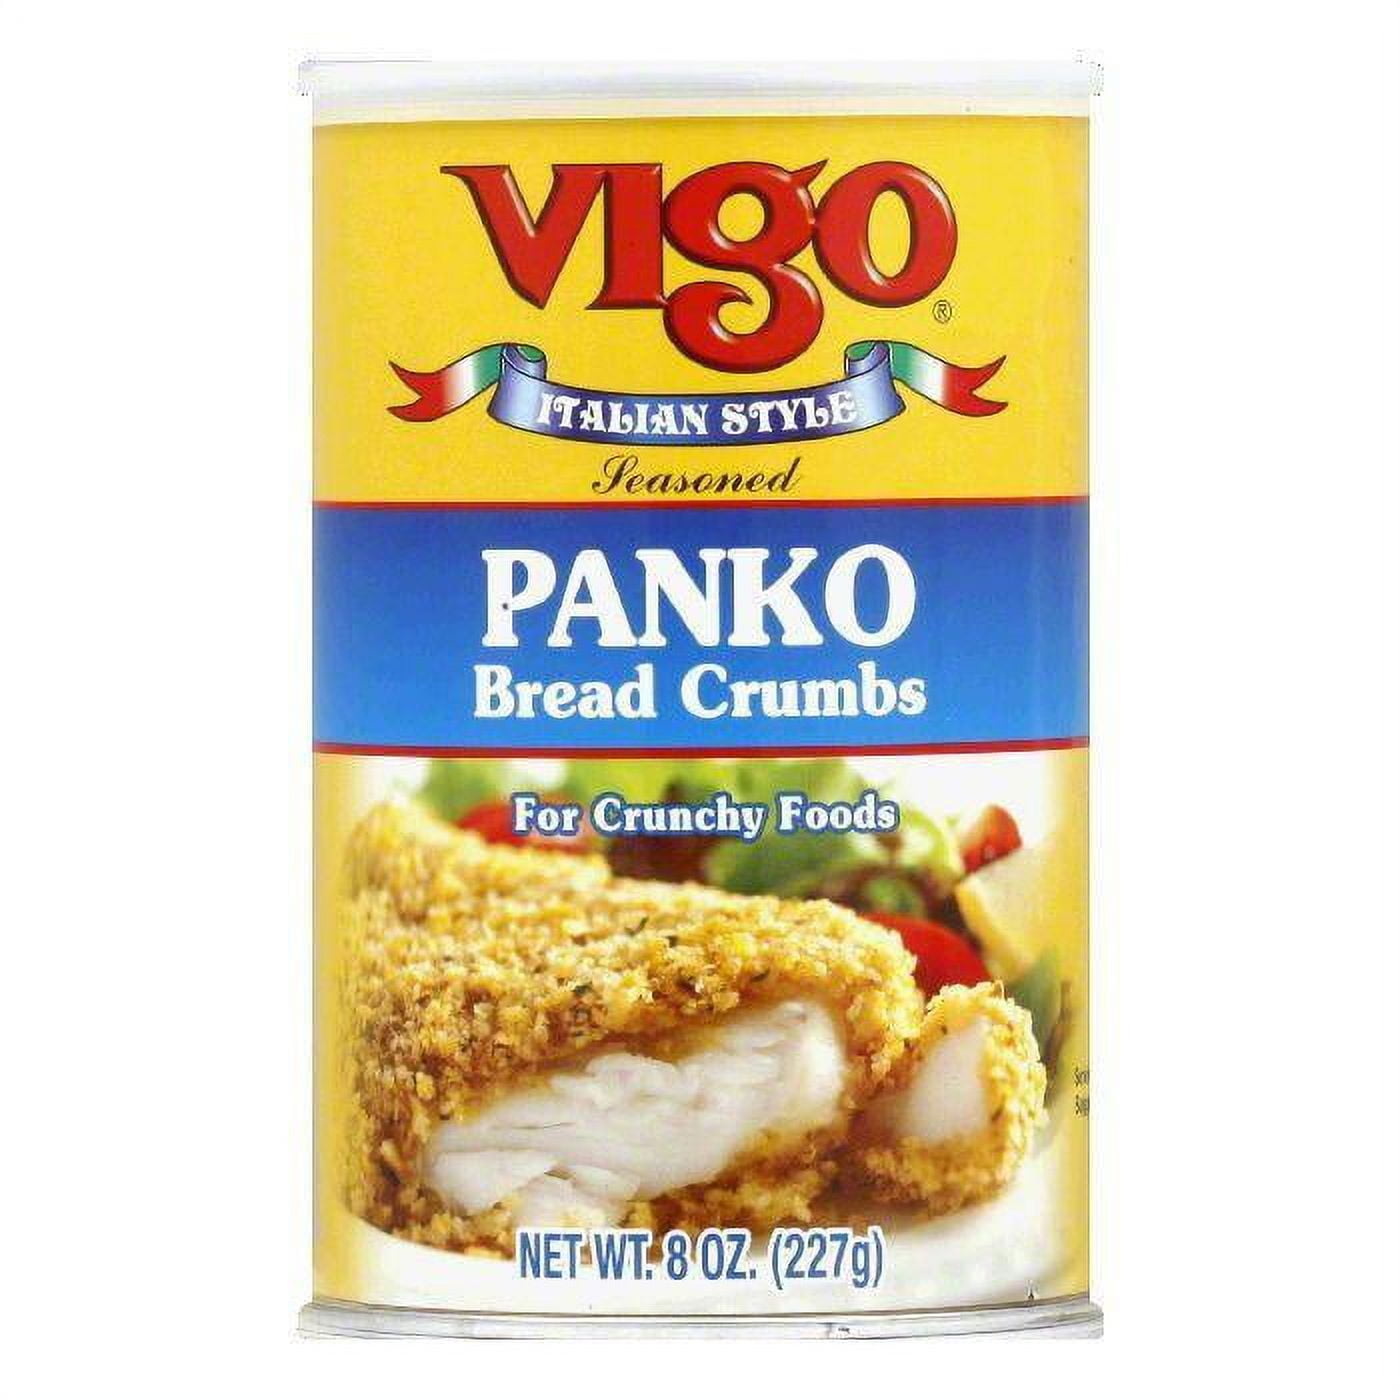 Toasted Panko Bread Crumbs [Seasoned]